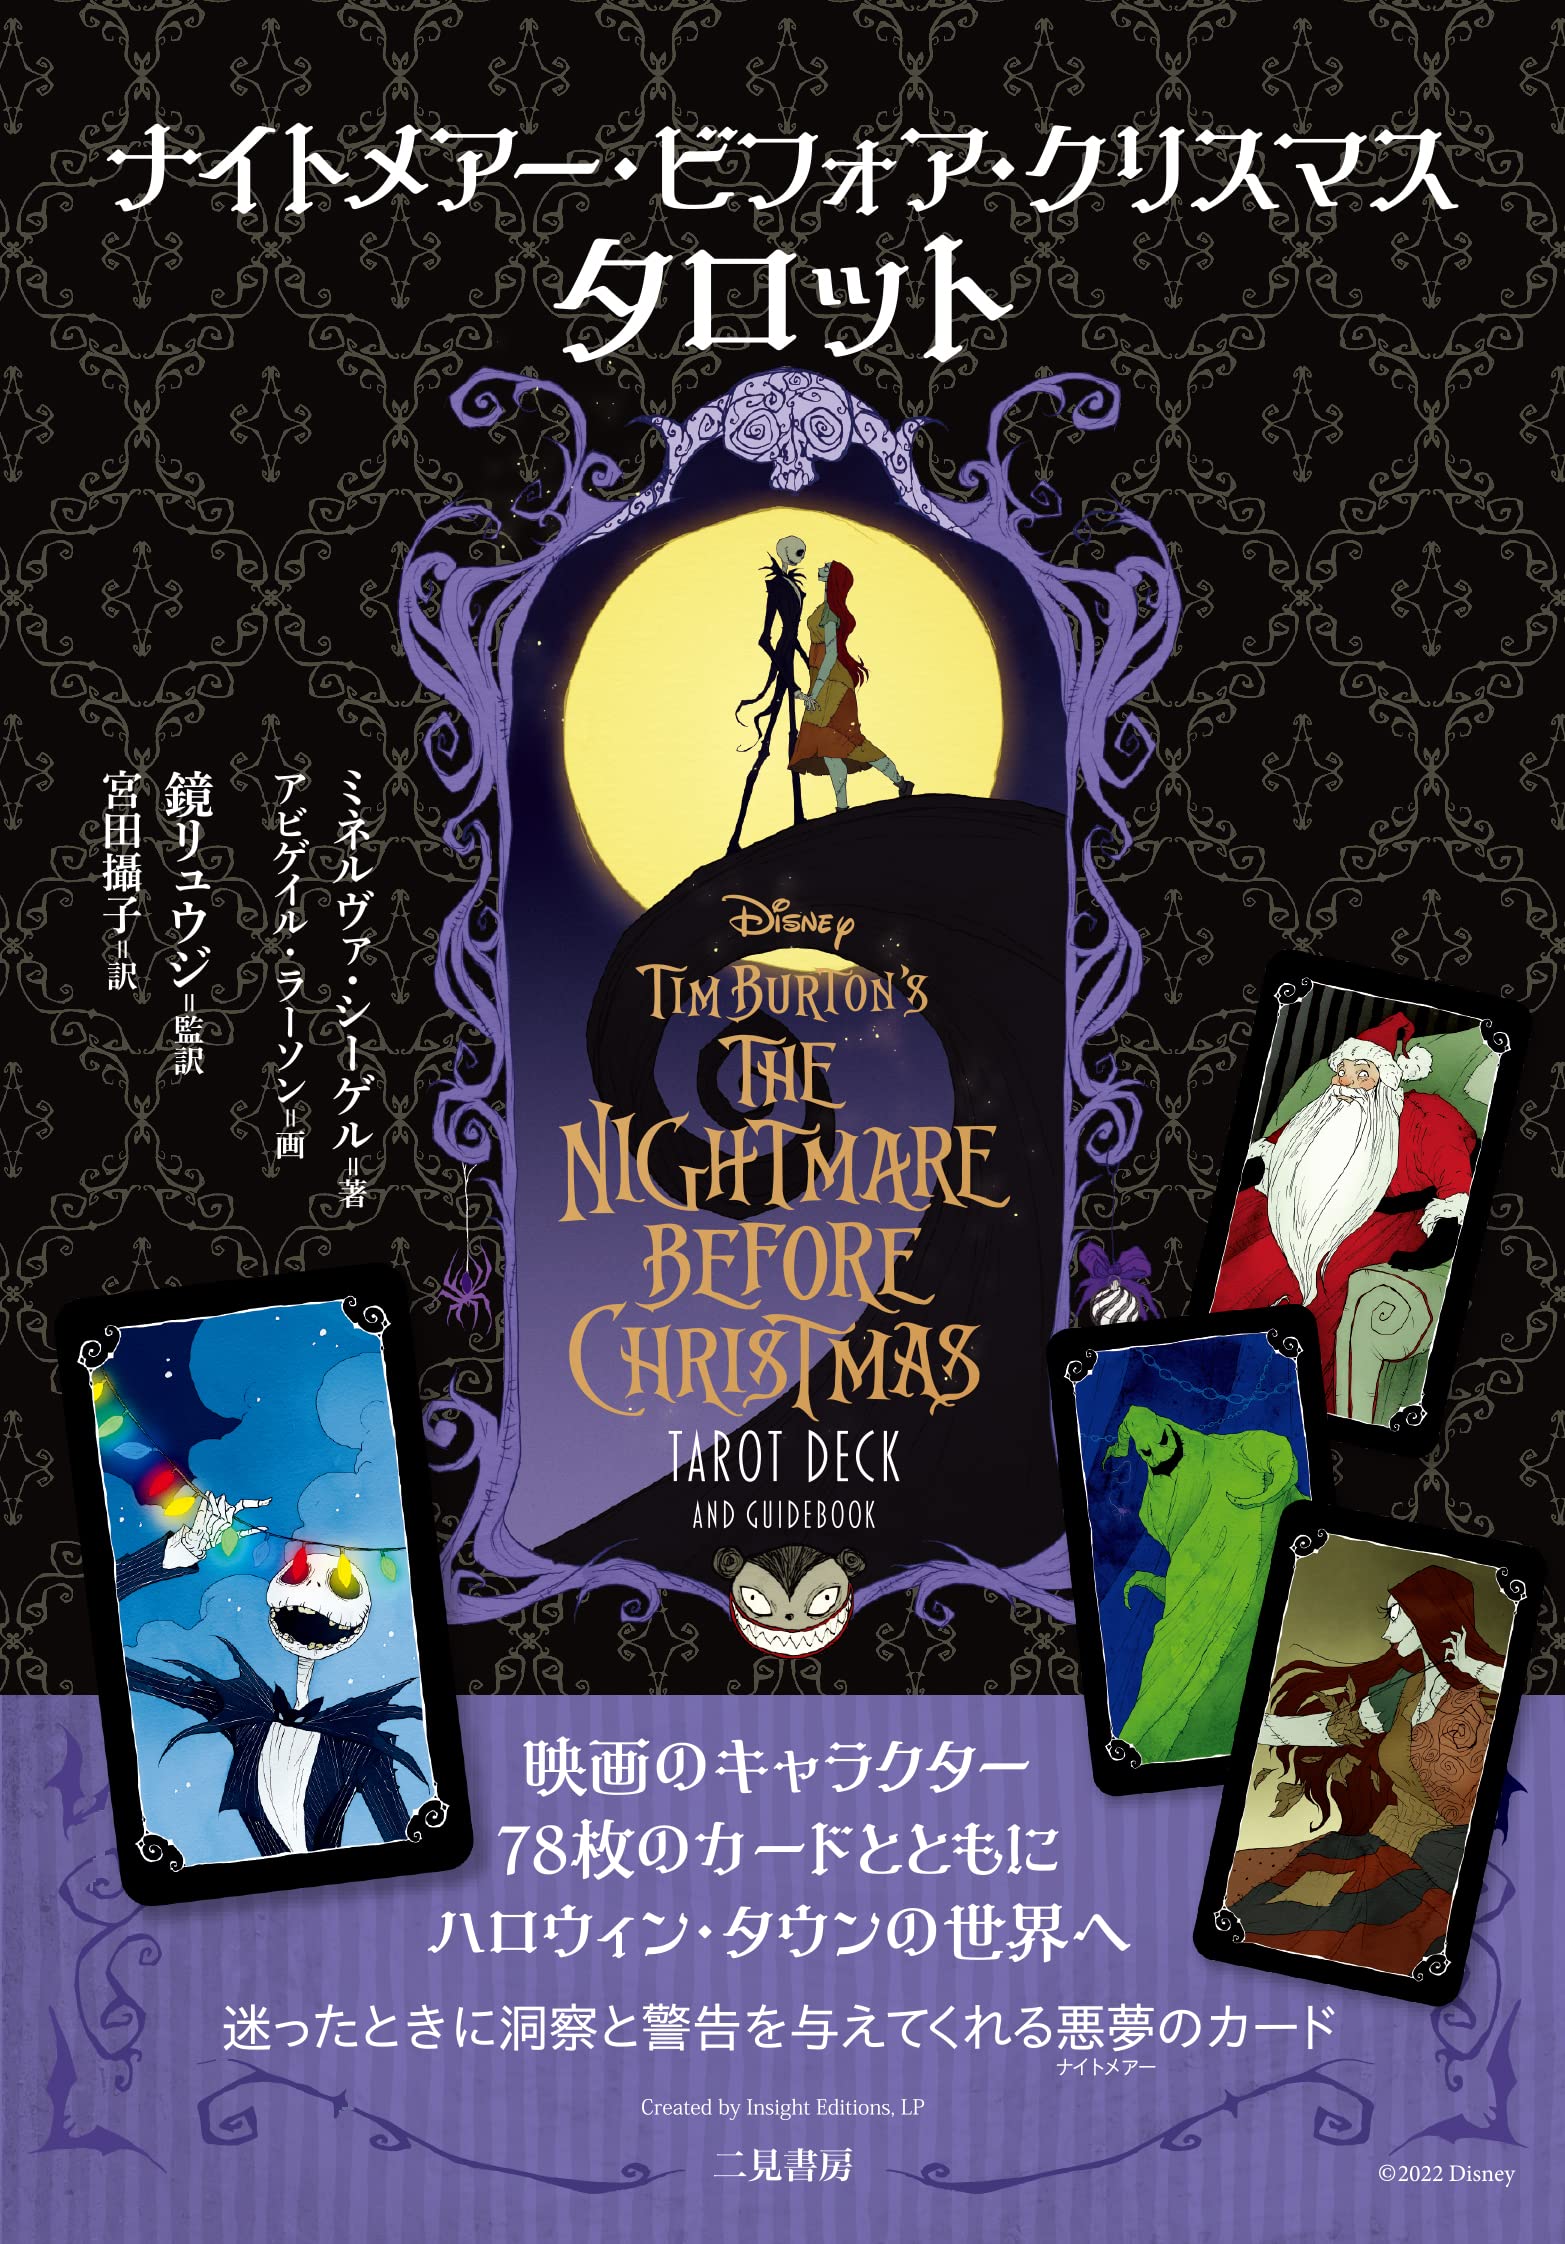 再入荷 ナイトメアービフォアクリスマスタロット 22年4月発売 日本のオラクルカード タロットカード全集オンラインストア